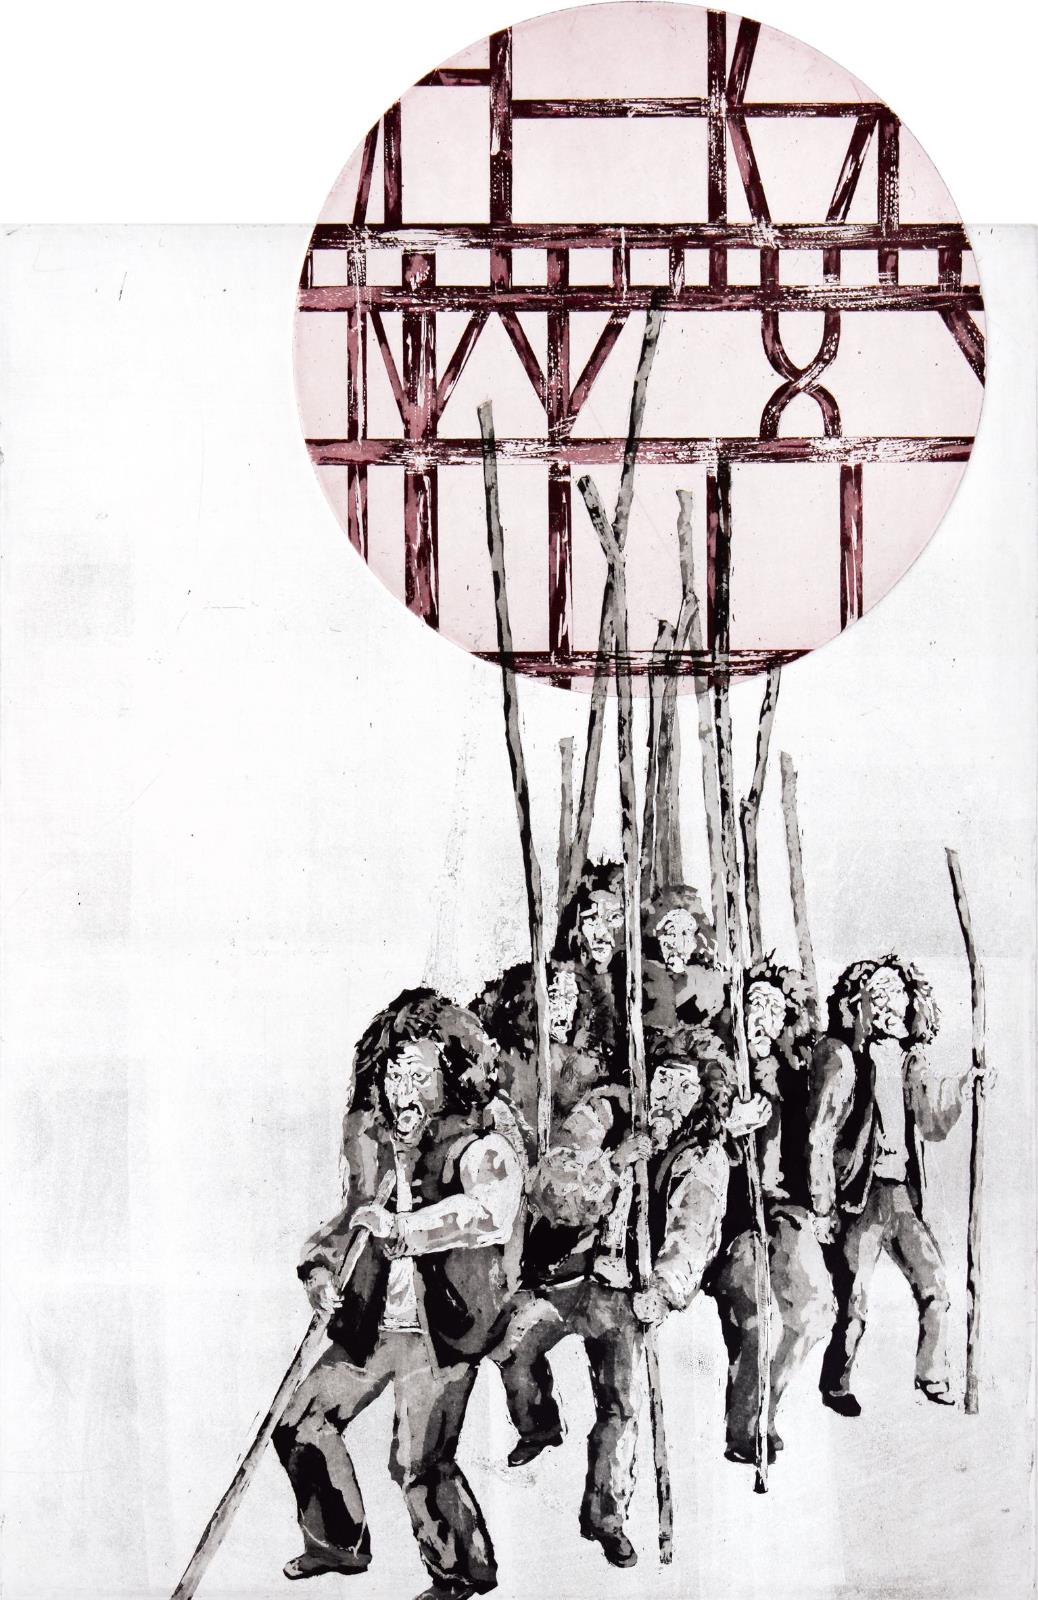 Karin Brosa,
Awa!,
2014,
Farbradierung,
64 cm x 49 cm, Auflage 10